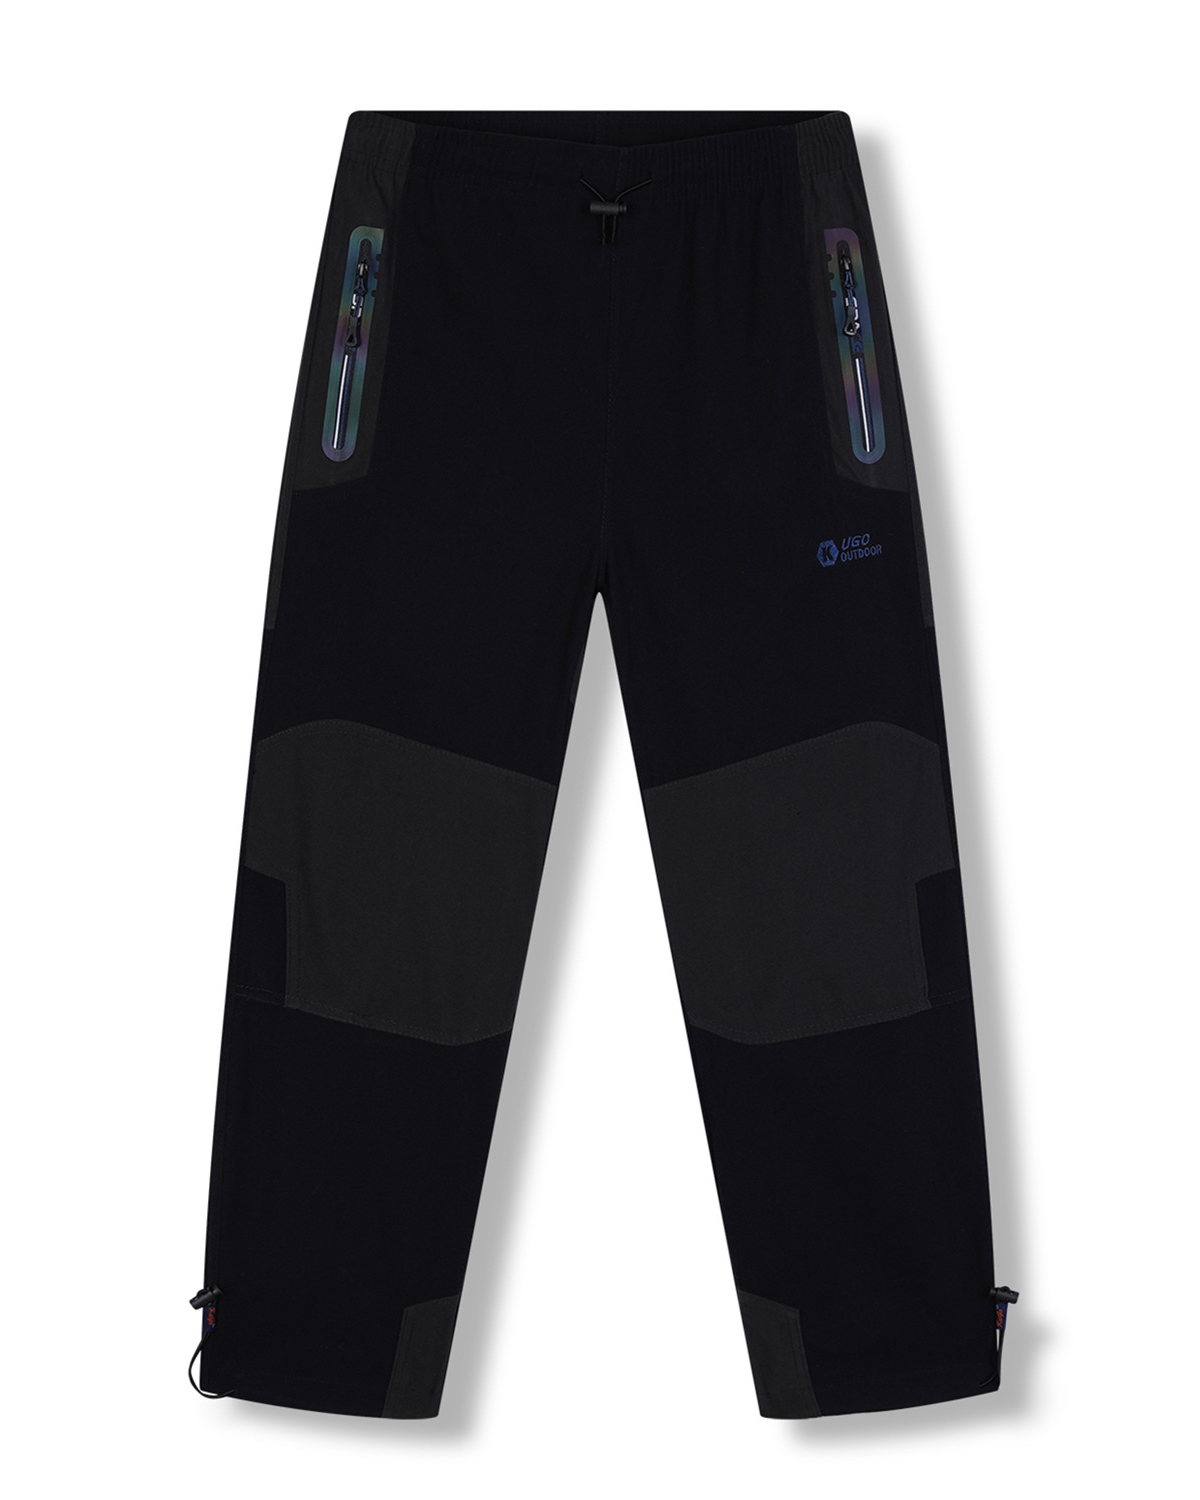 Chlapecké outdoorové kalhoty - KUGO G9667, černá Barva: Černá, Velikost: 164